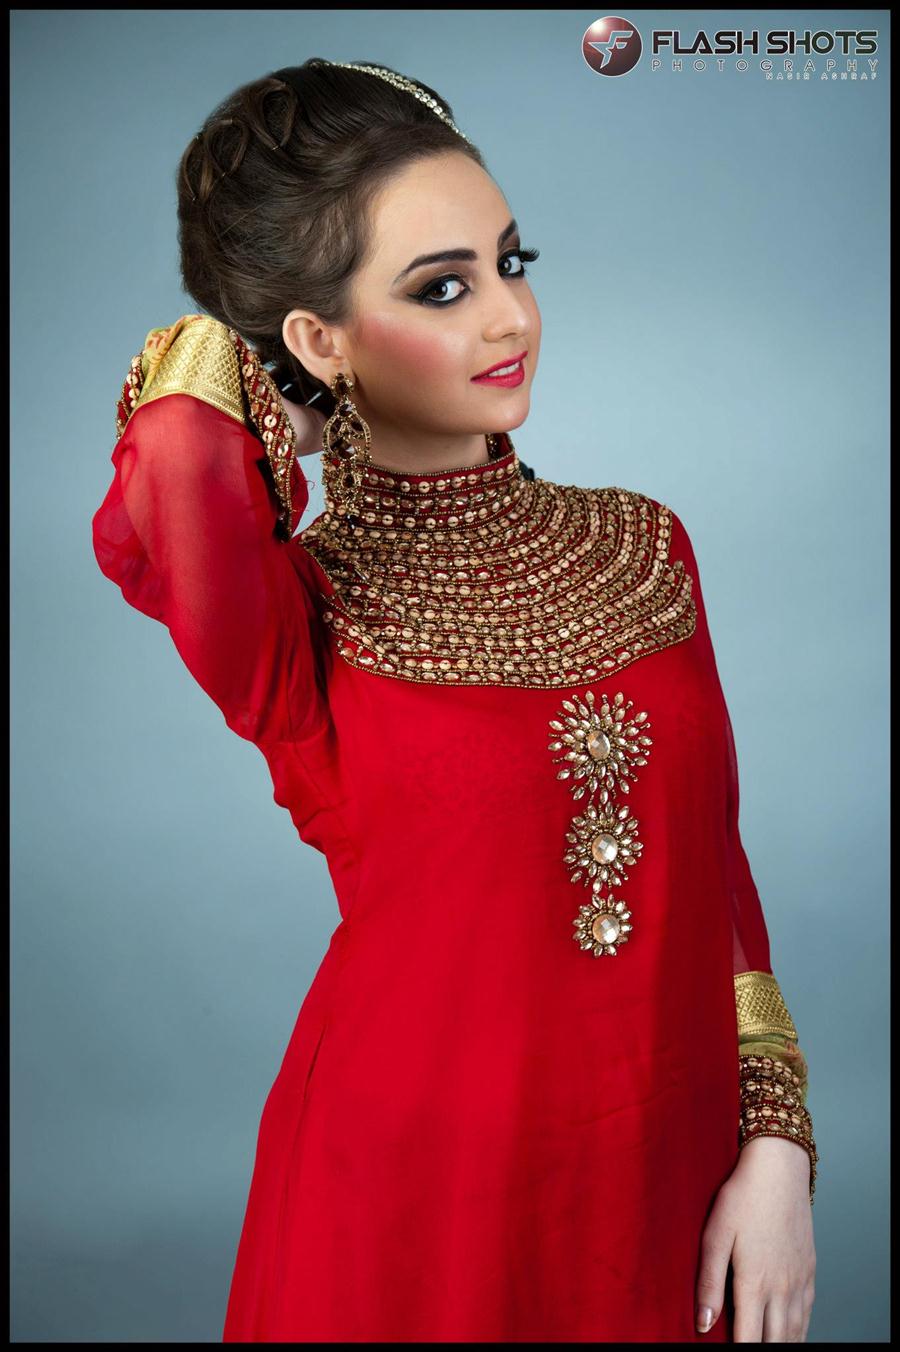 Red Bridal Dress Flash Shots Photo Graphy Nasir Ashraf - XciteFun.net